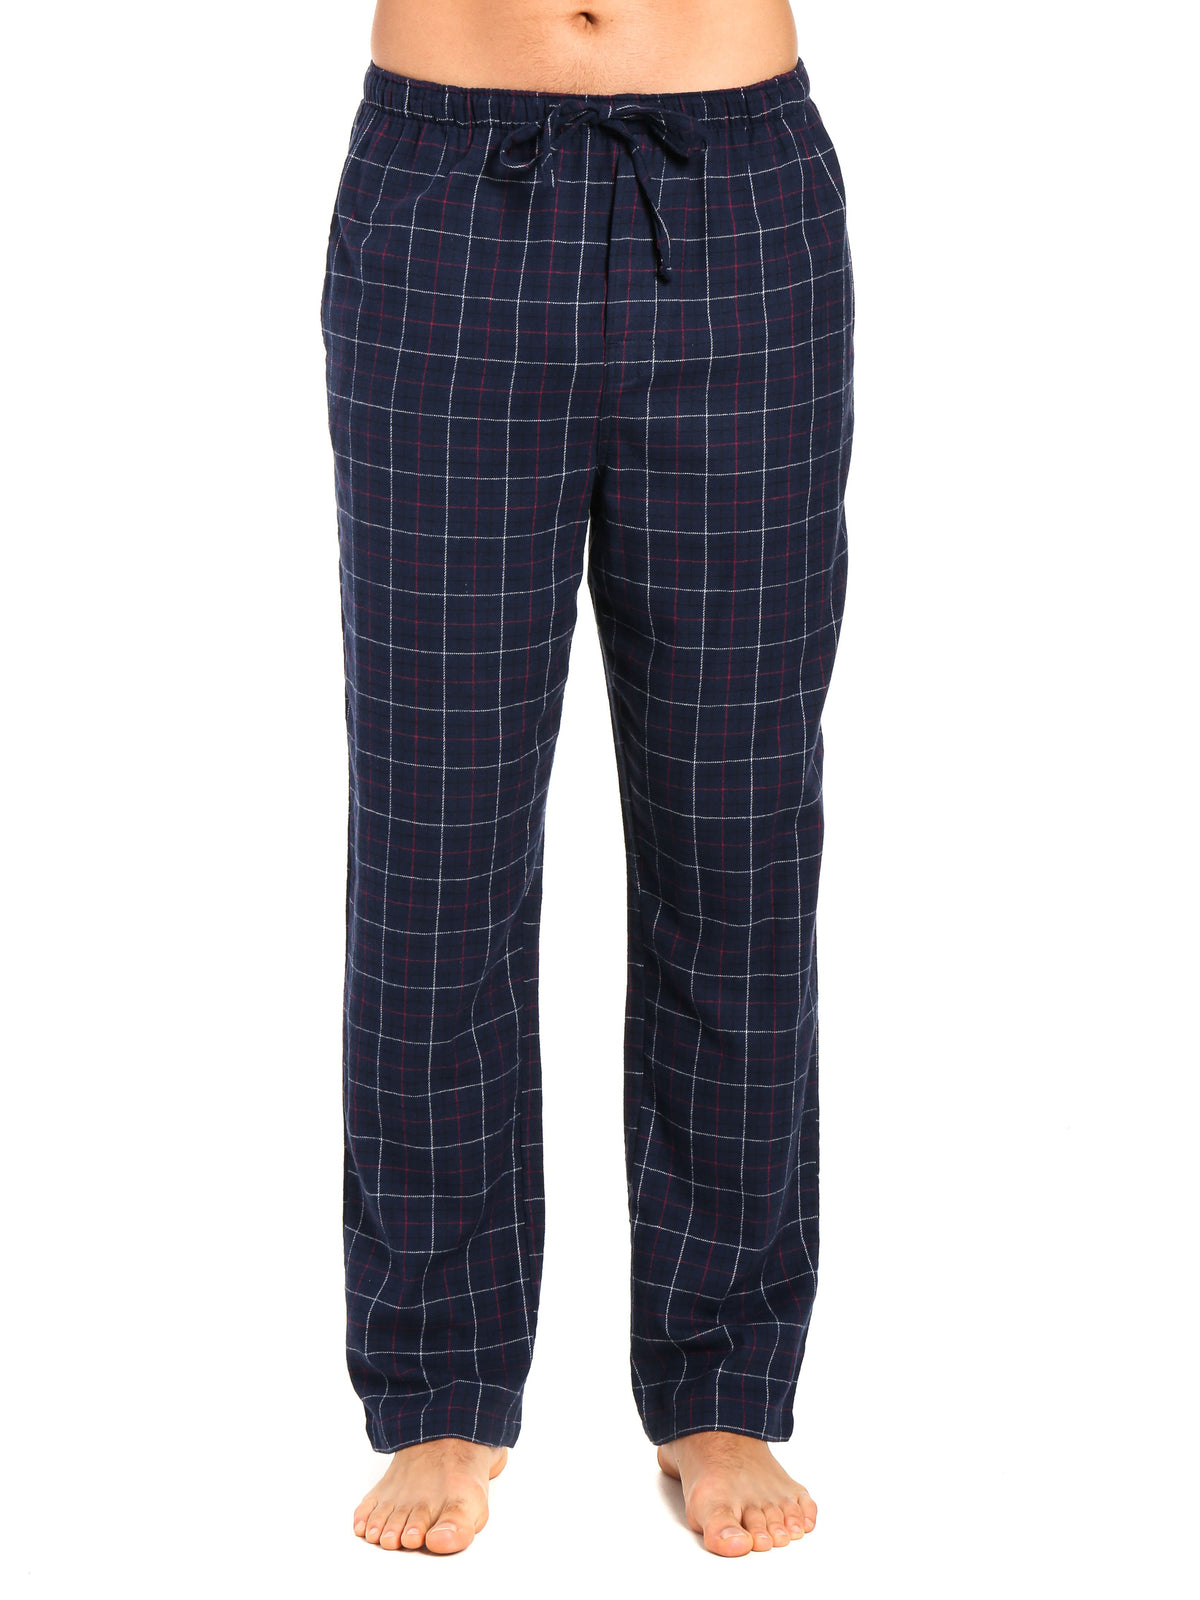 Men's 100% Cotton Flannel Lounge Pants - Plaid Navy-Multi